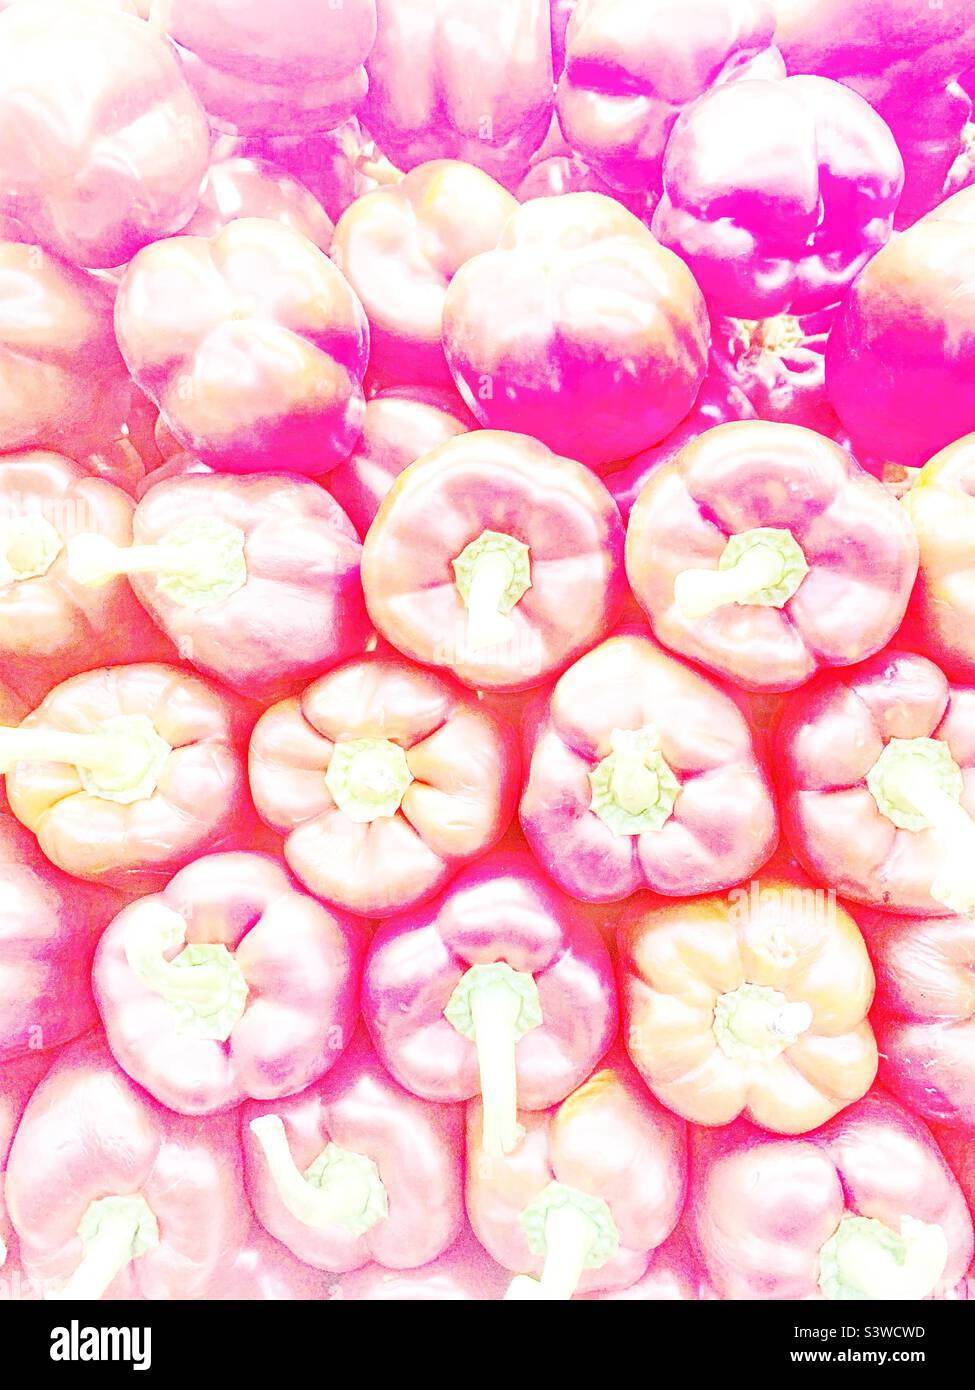 Künstlerische überbelichtete Ansicht eines Stapels frischer Paprika. Stockfoto